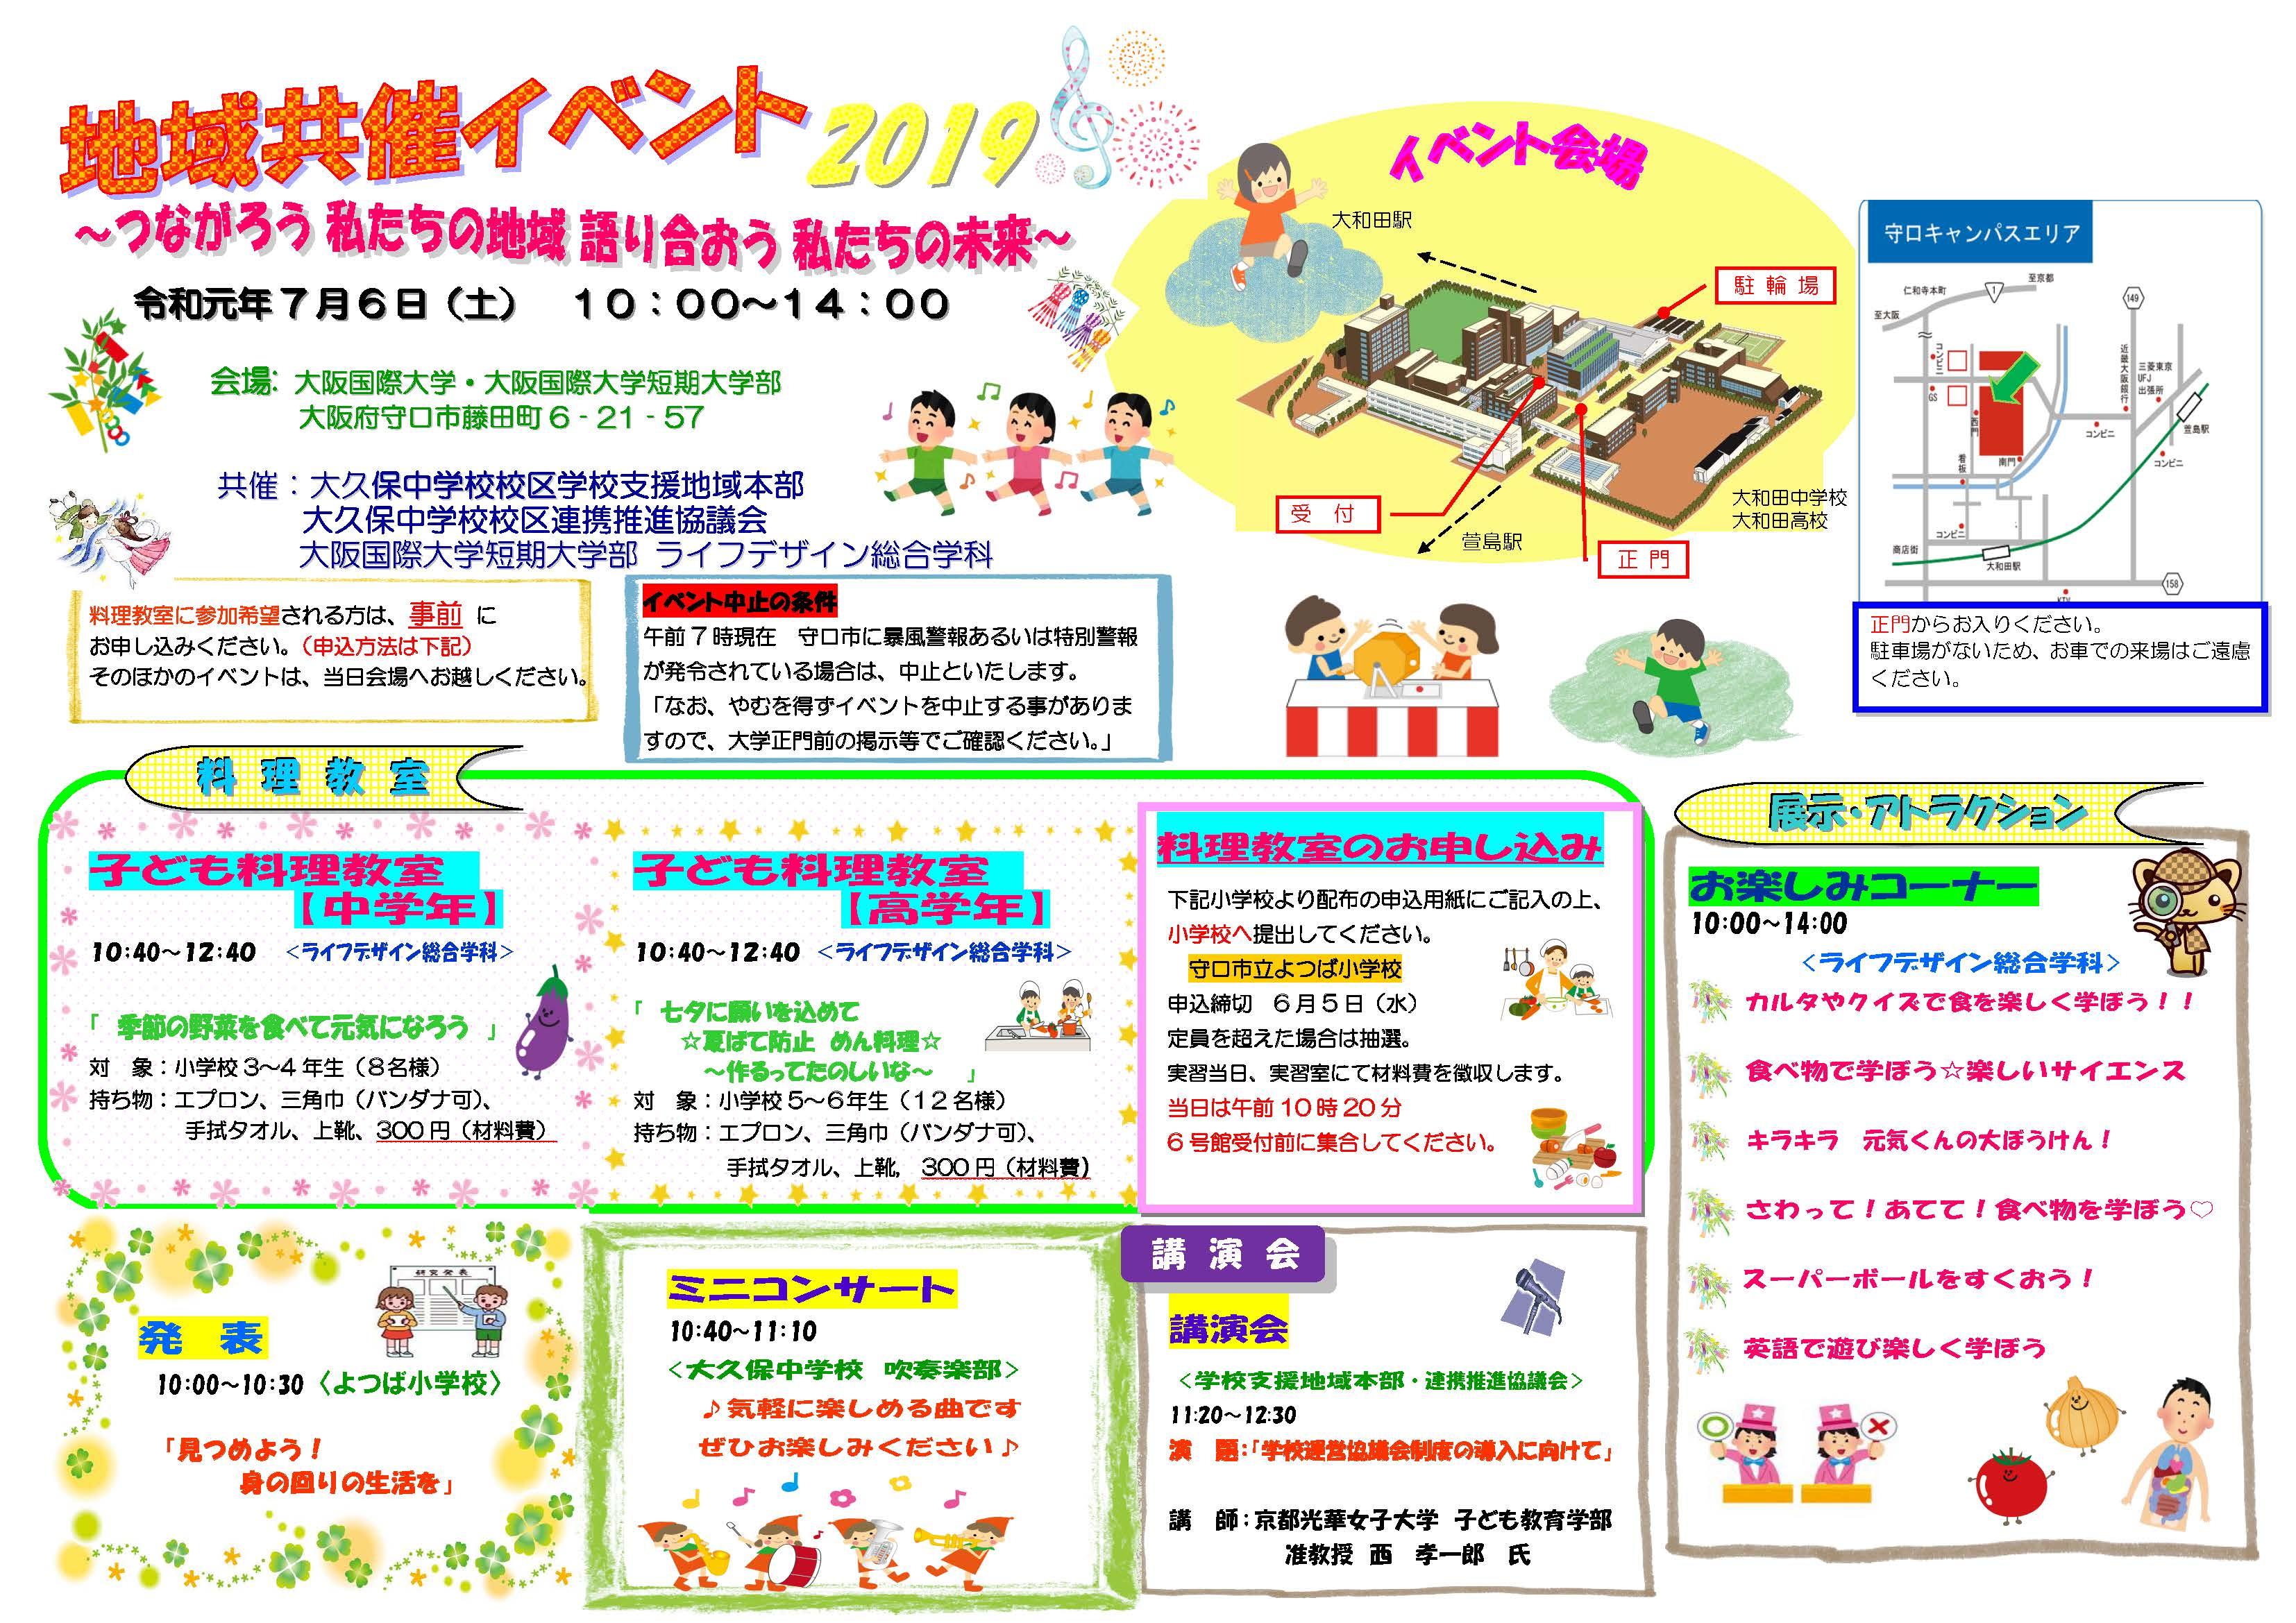 大阪国際大学短期大学部が7月6日に地域共催イベント「つながろう私たちの地域、語り合おう私たちの未来」を開催 -- 七夕に願いを込めて、学生による子ども料理教室などを実施